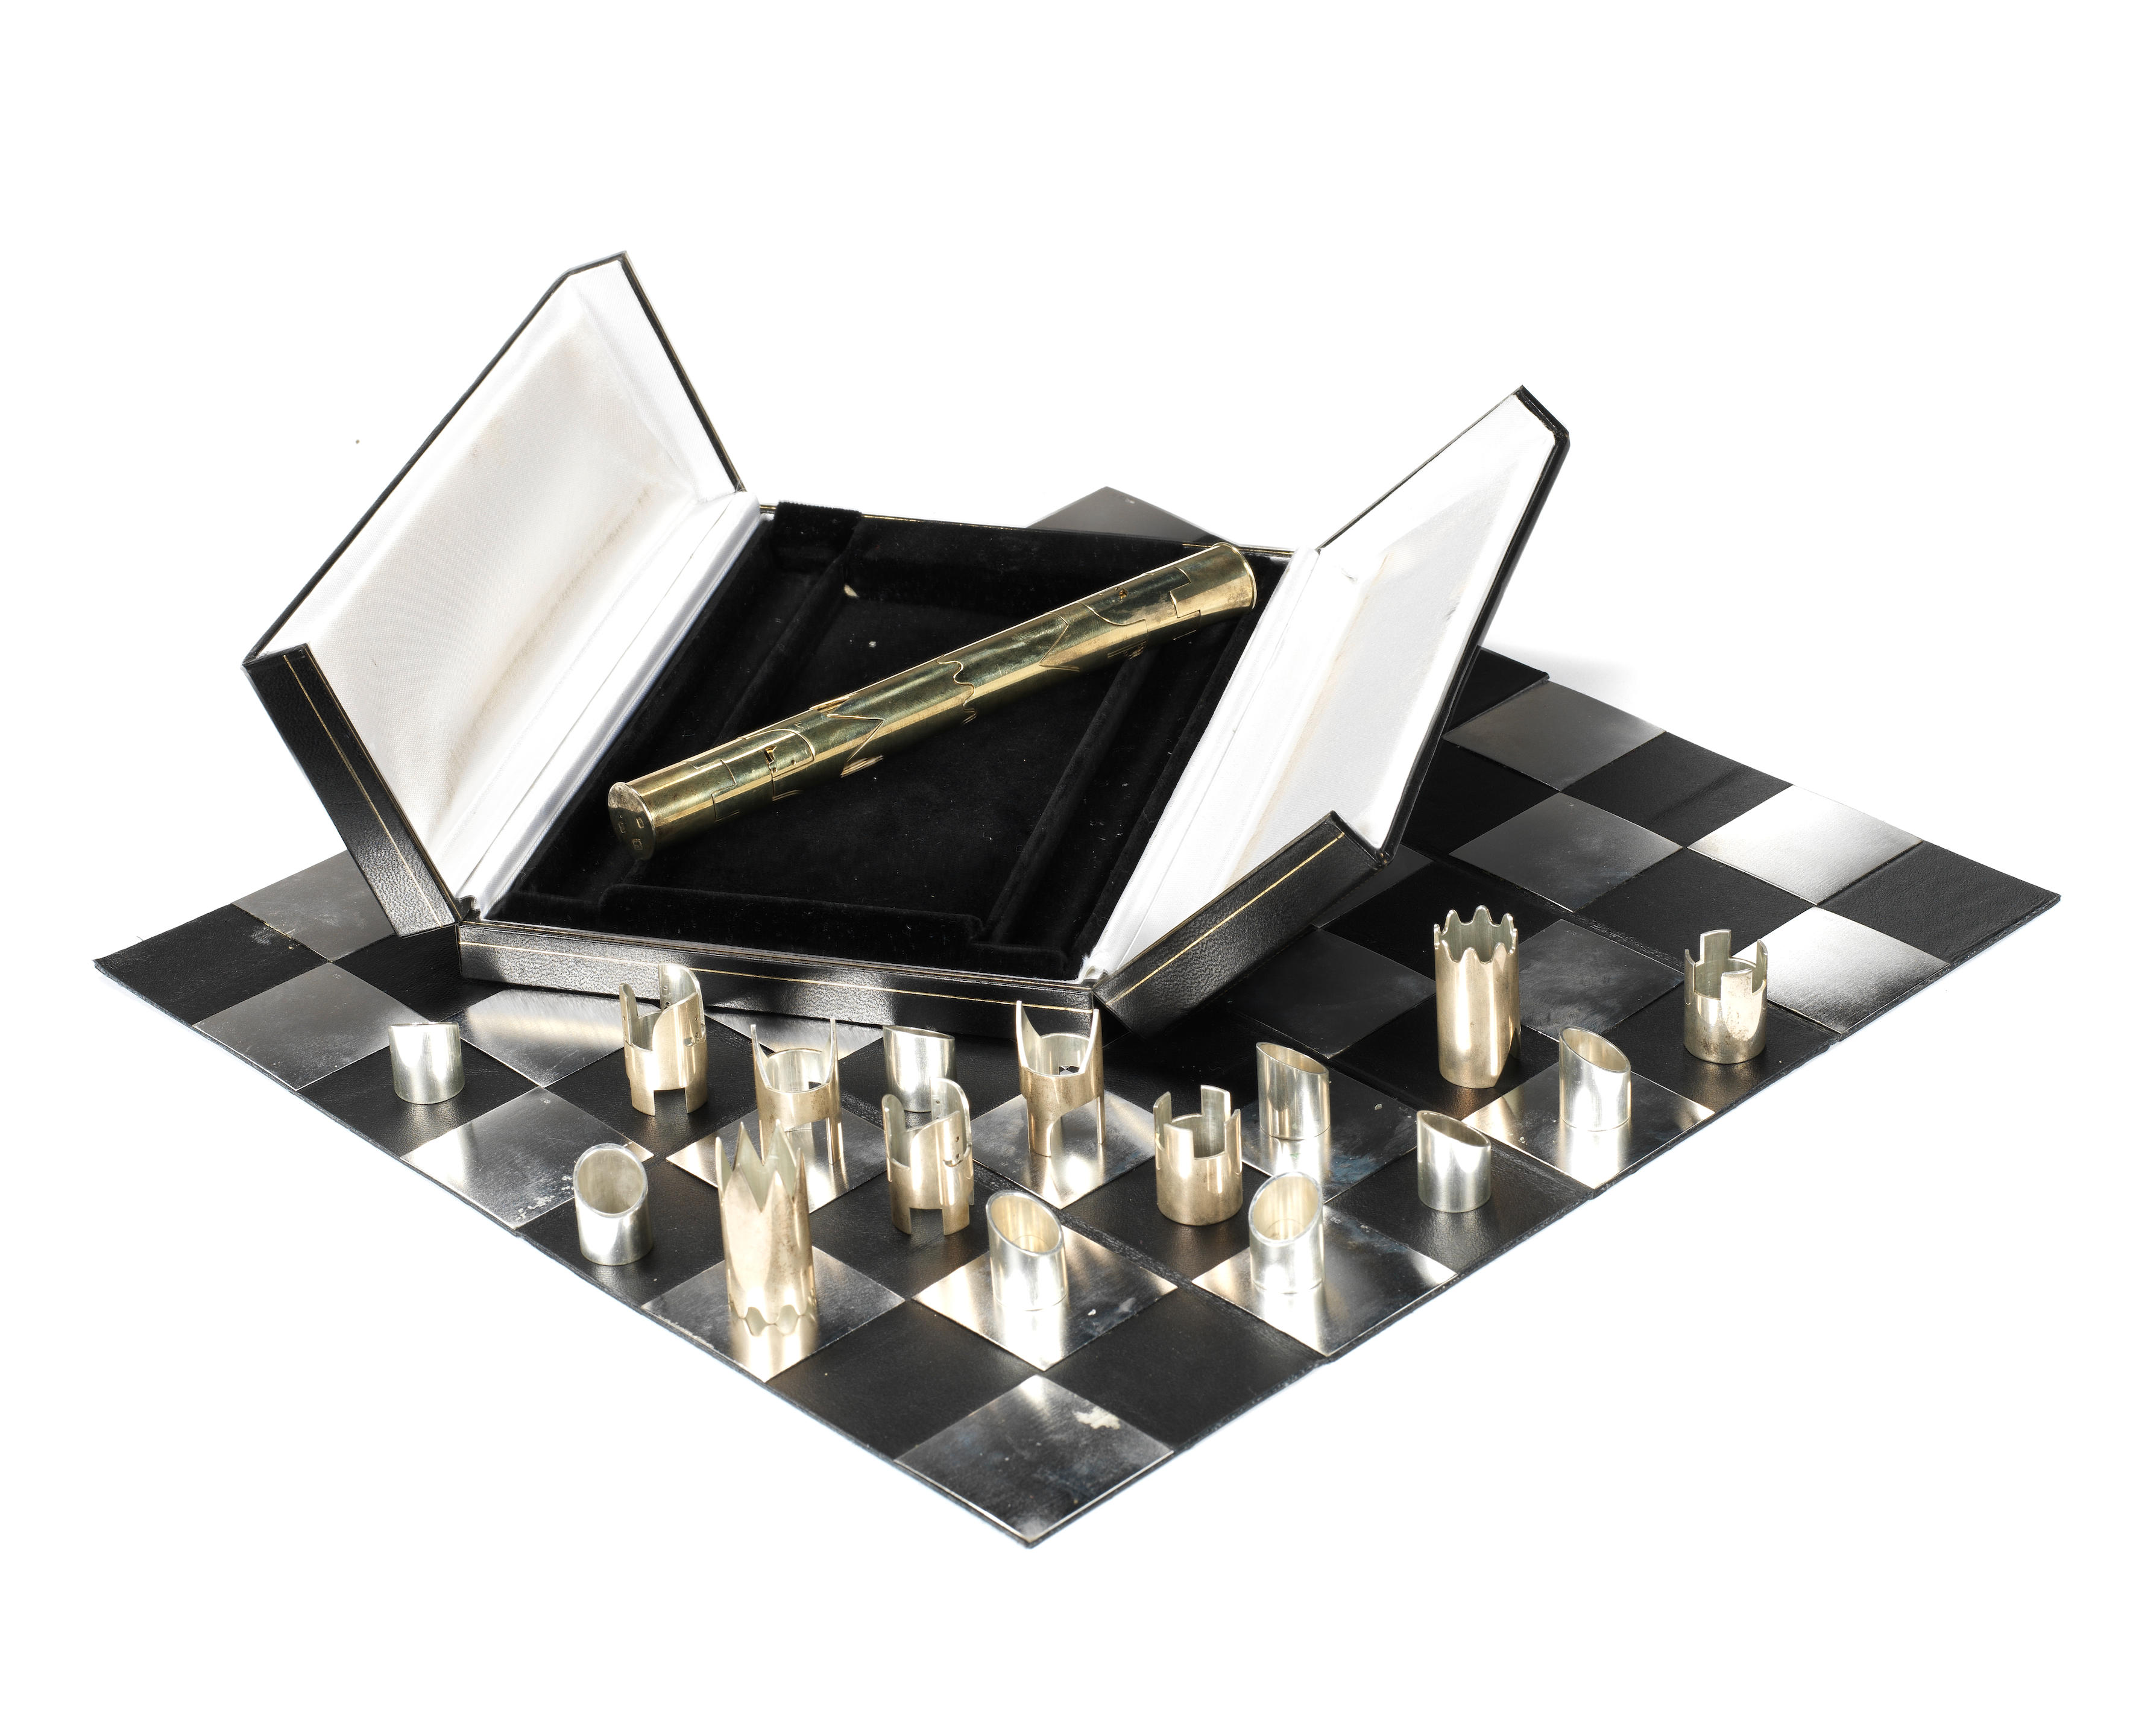 Gucci chess set.